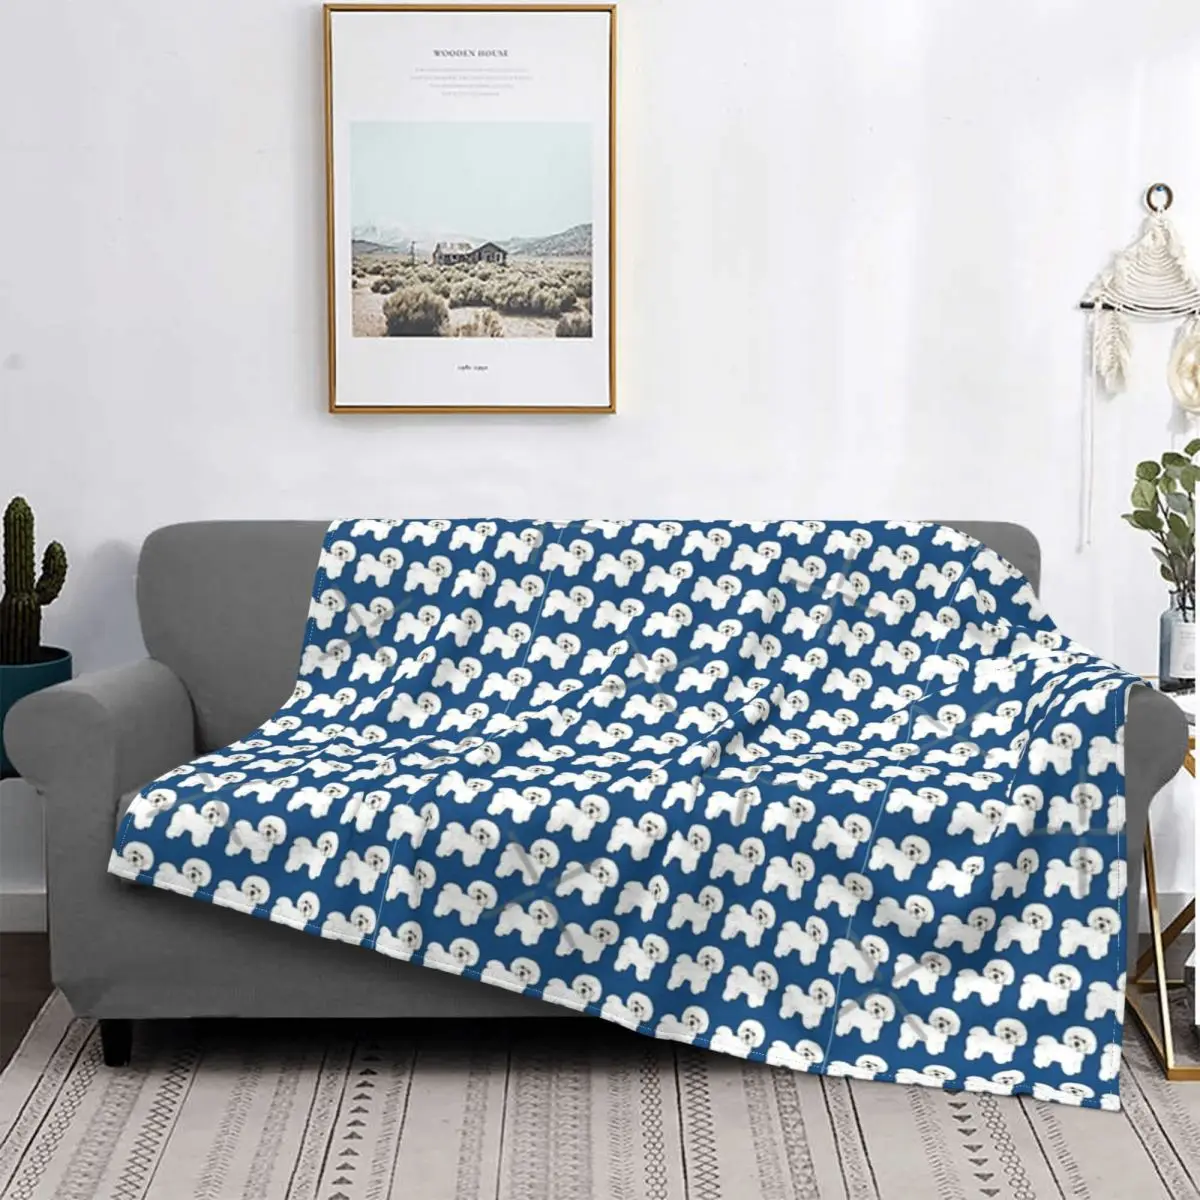 

Bichon лучший друг лояльное и забавное одеяло покрывало для кровати плед муслиновые покрывала с капюшоном одеяло для приема s